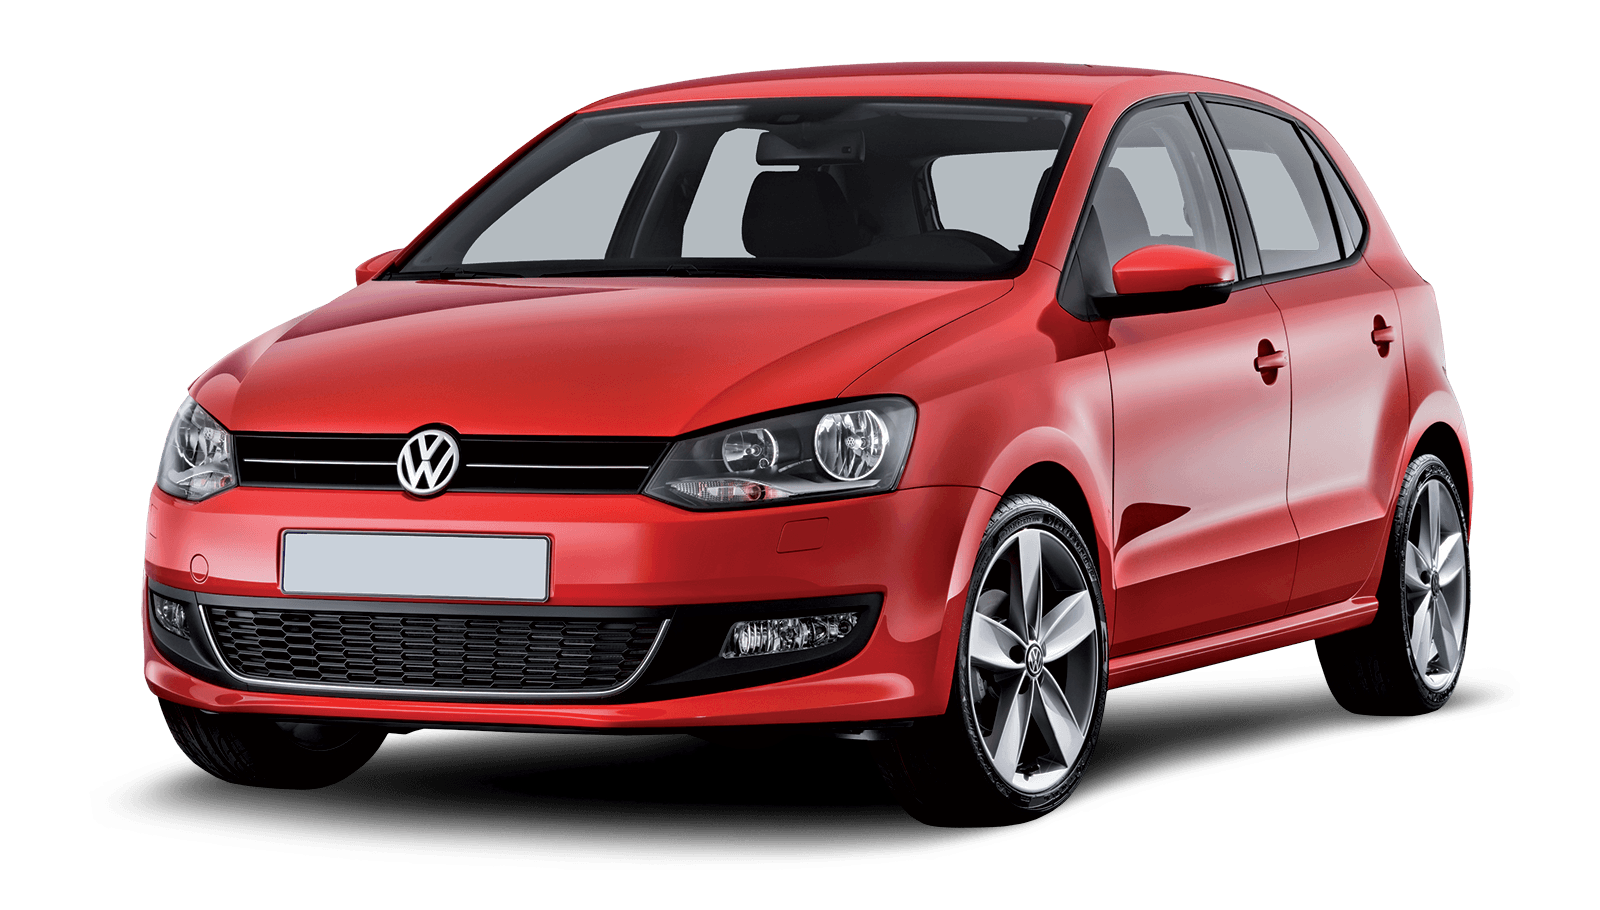 Volkswagen Png Car Image PNG Image